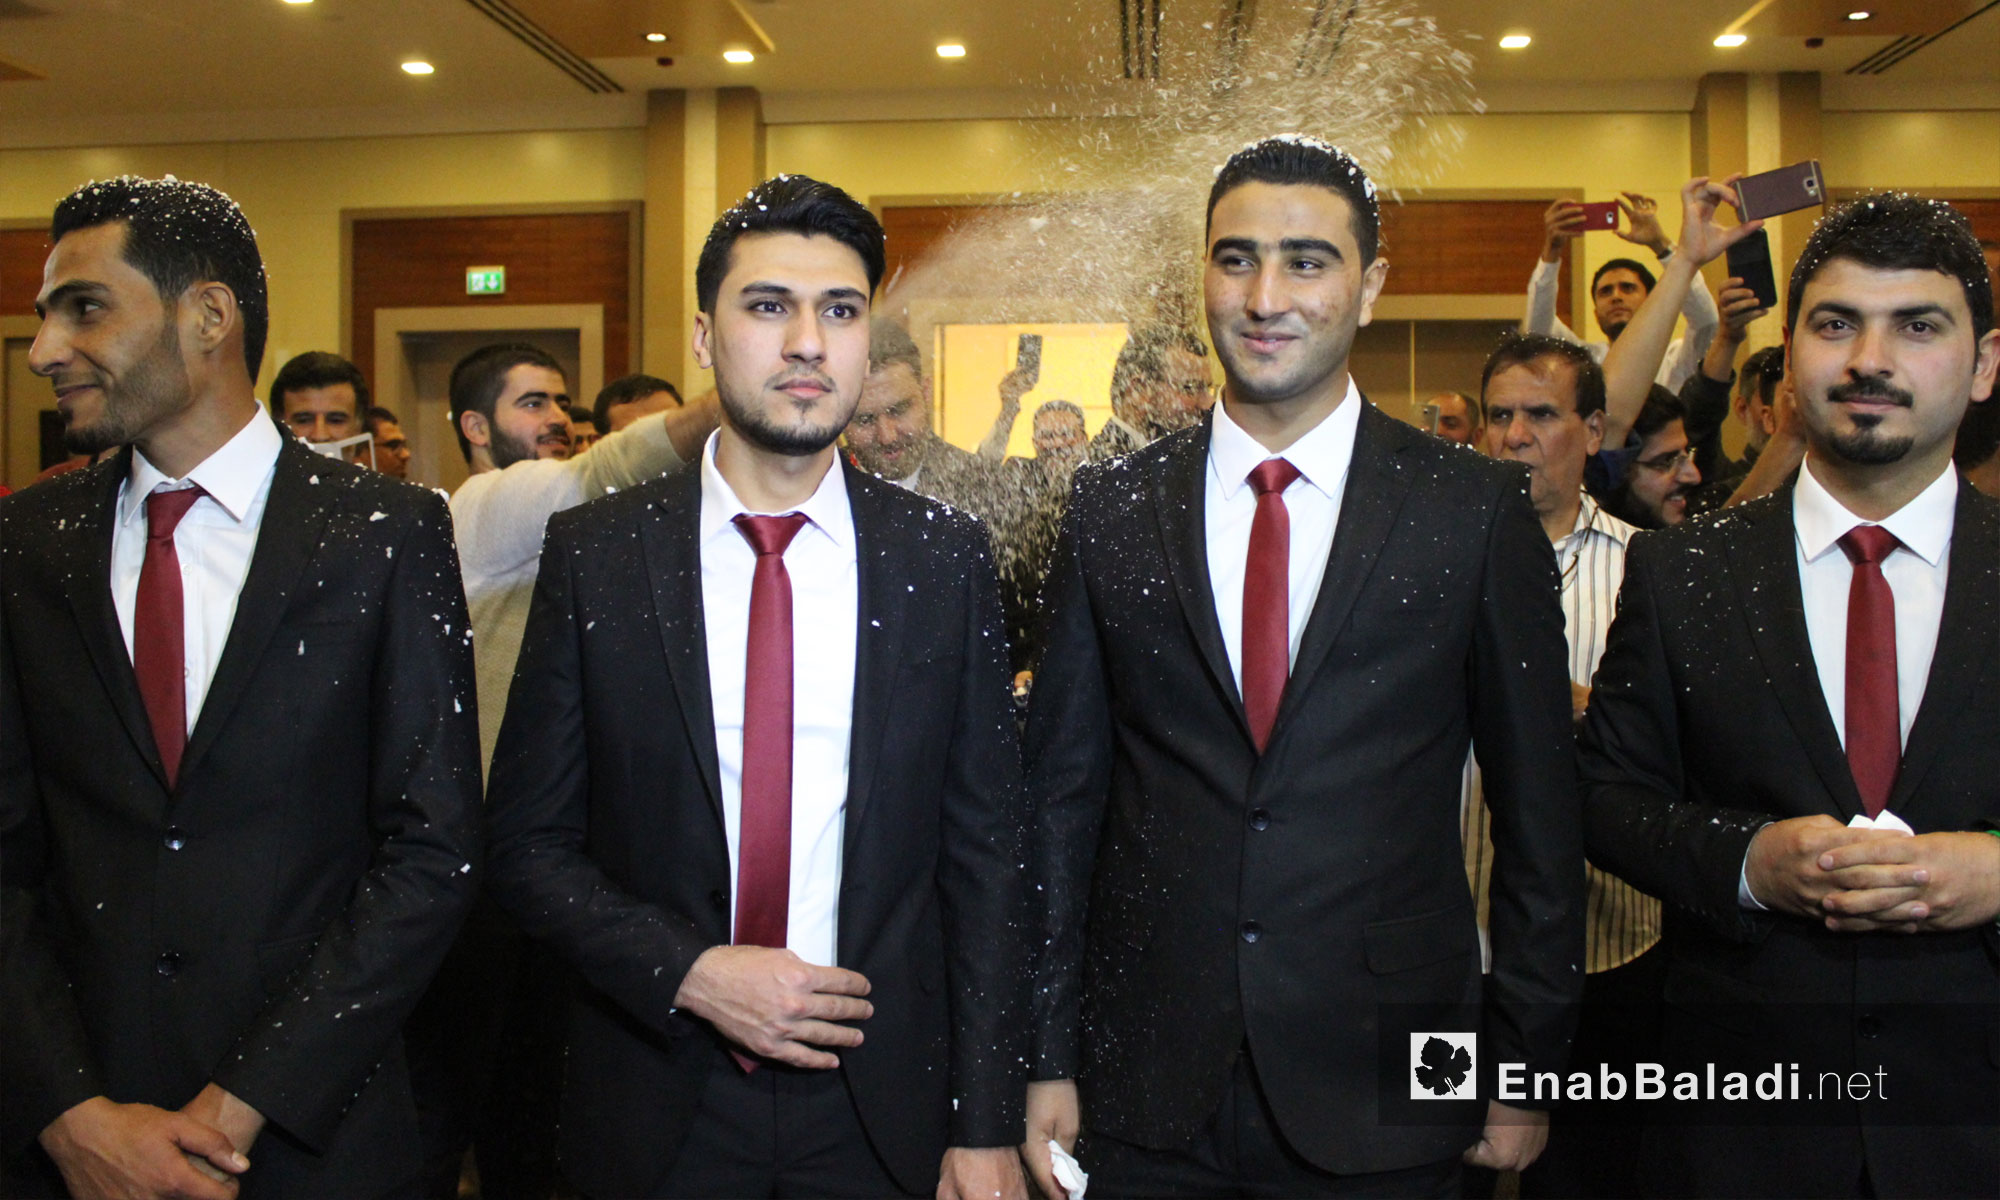 حفل زفاف لخمسة سوريين في أورفة التركية 29 تشرين الأول 2017 (عنب بلدي)